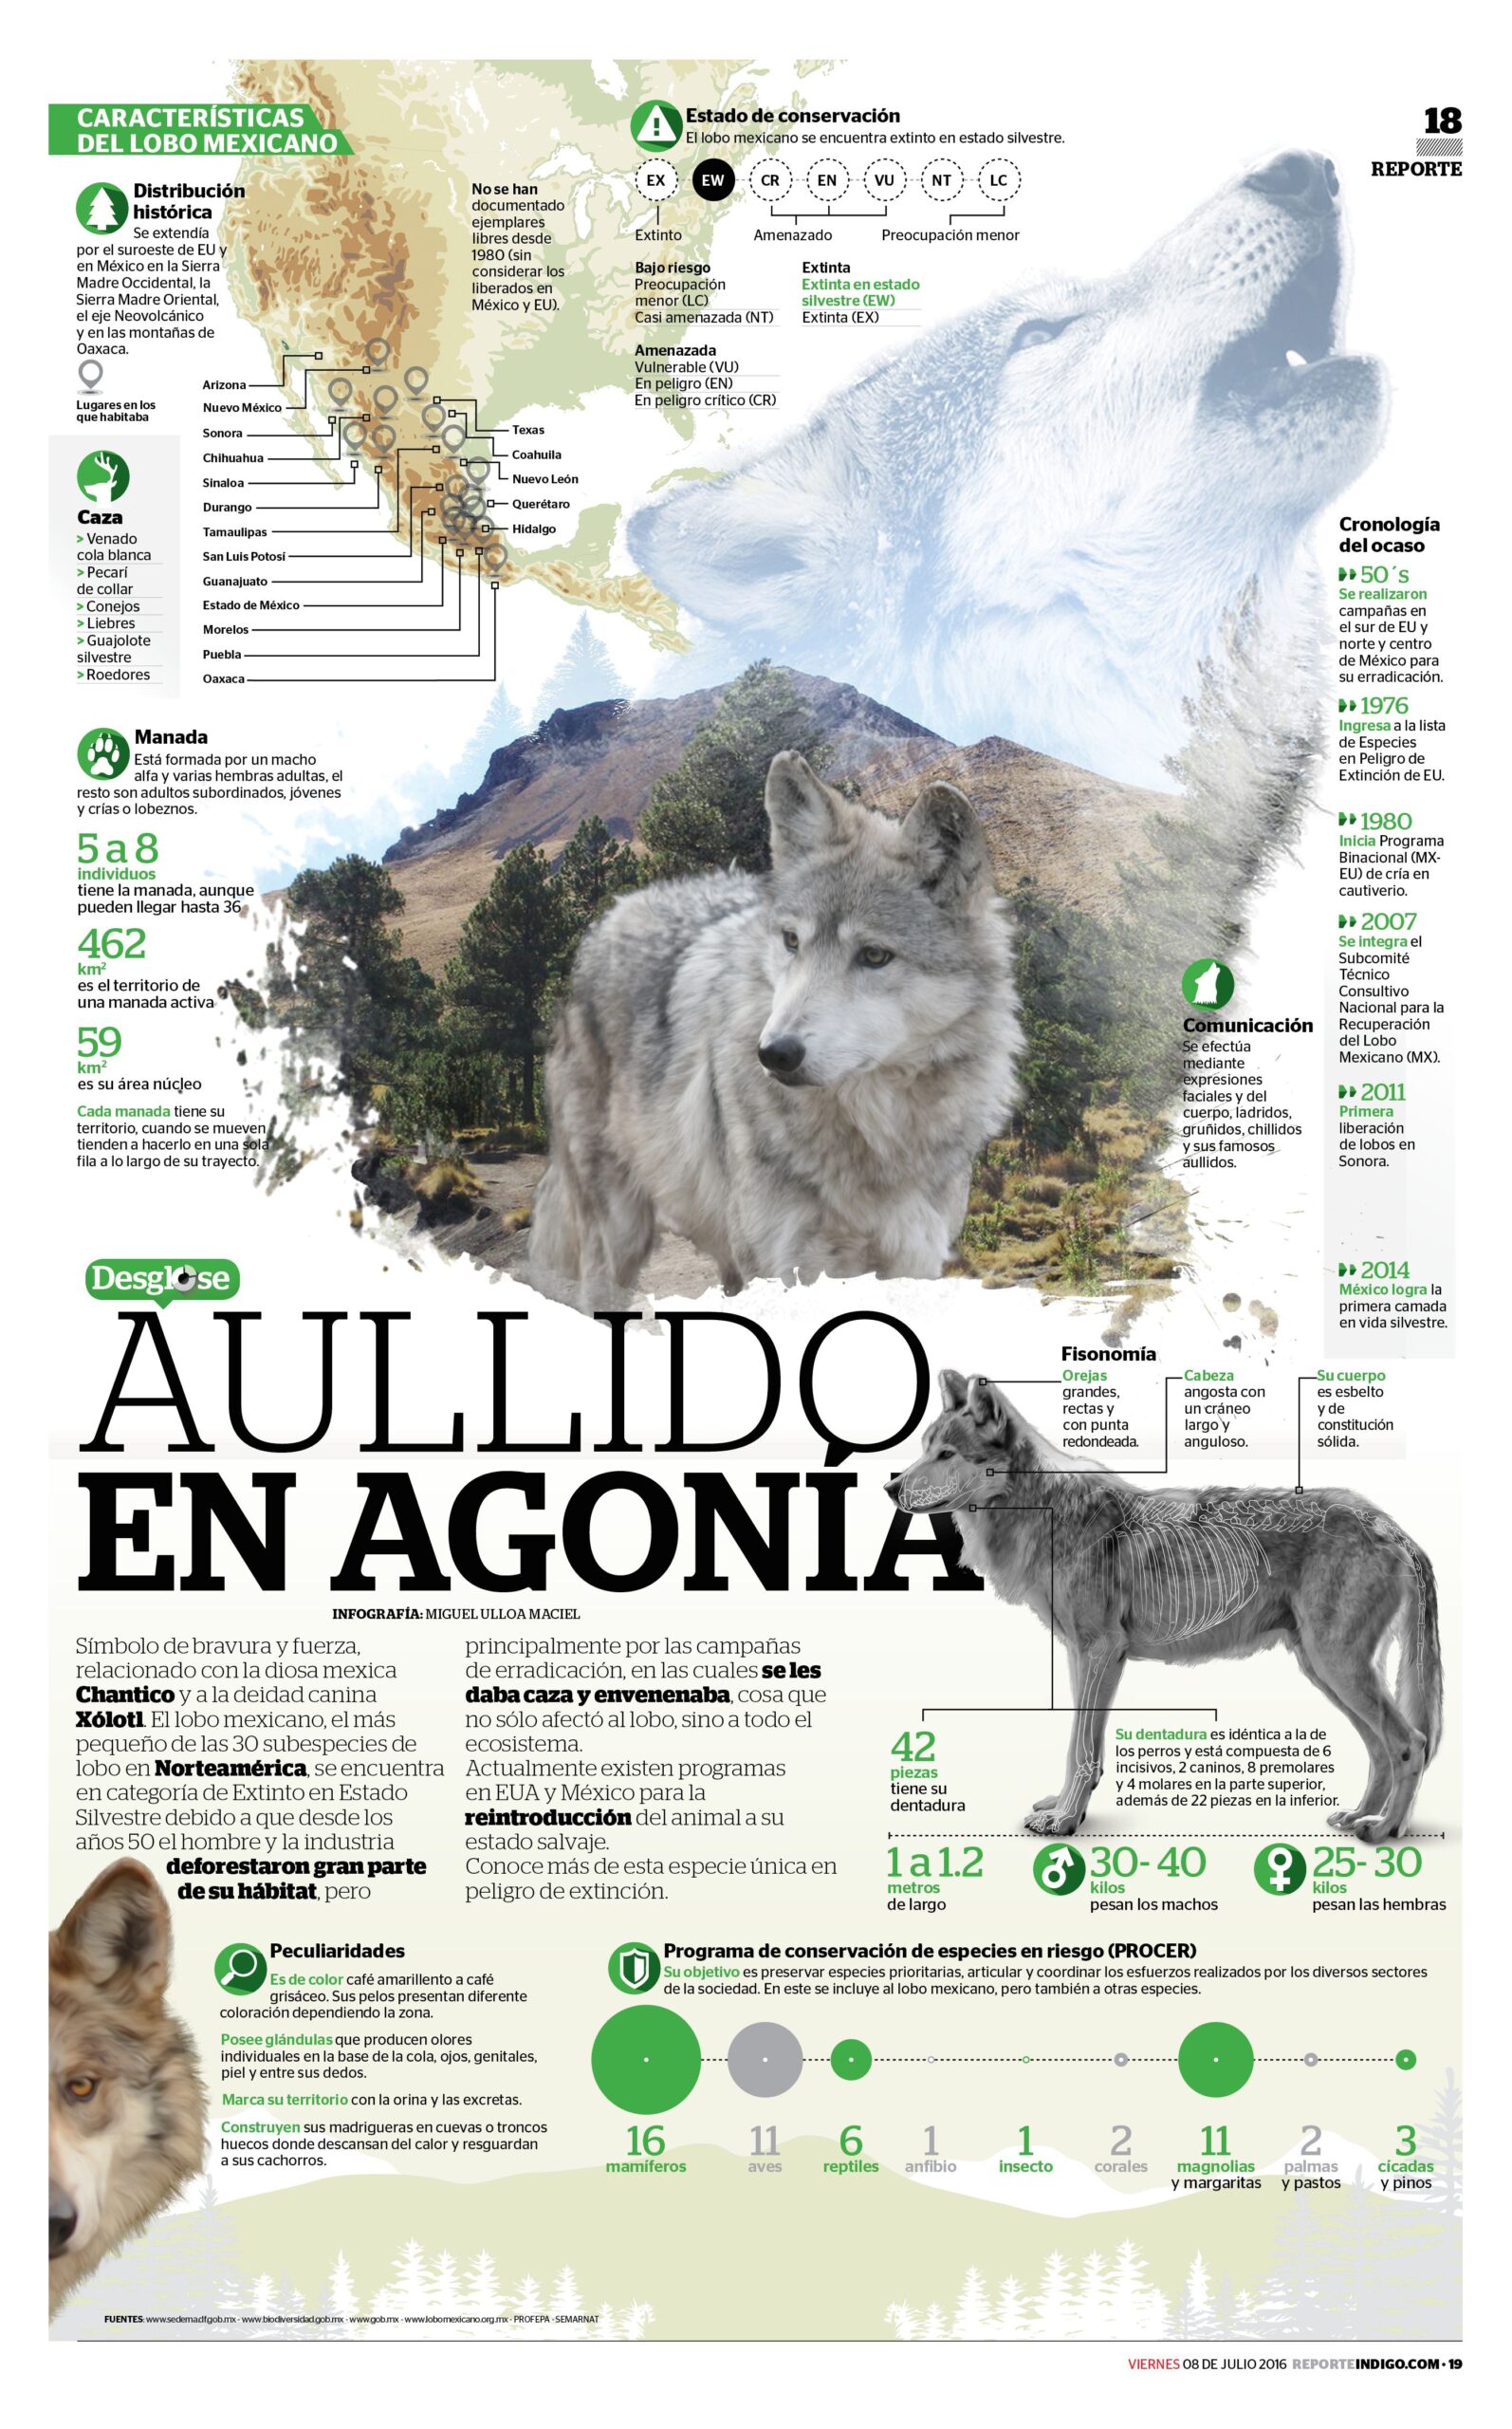 Otro Ejemplo De Una Infografía De Animales En Peligro De Extinción